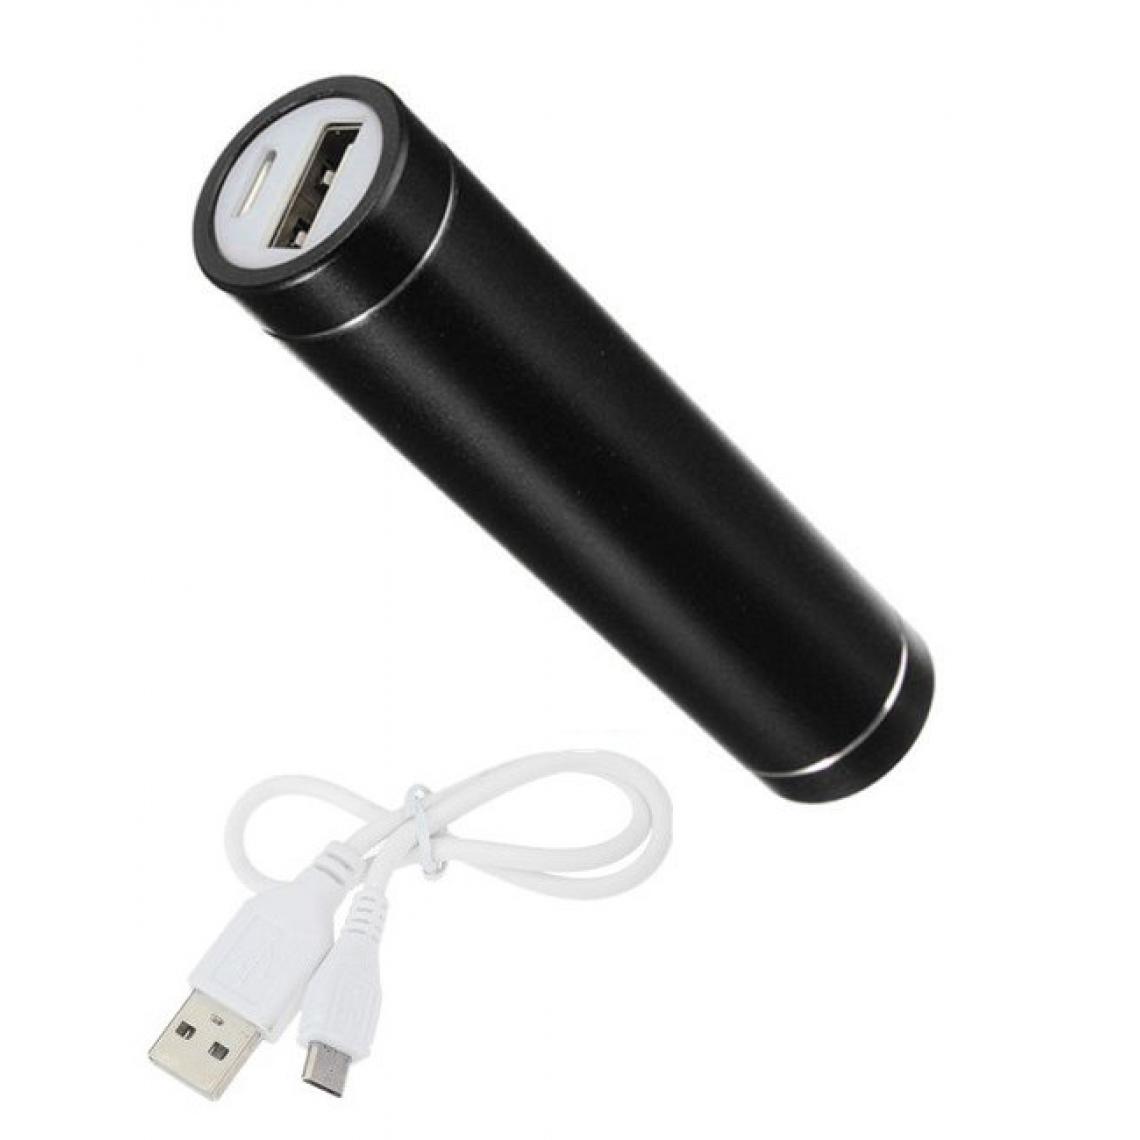 Shot - Batterie Chargeur Externe pour ASUS ZenFone 6 Power Bank 2600mAh avec Cable USB/Mirco USB Secours Telephone (NOIR) - Chargeur secteur téléphone